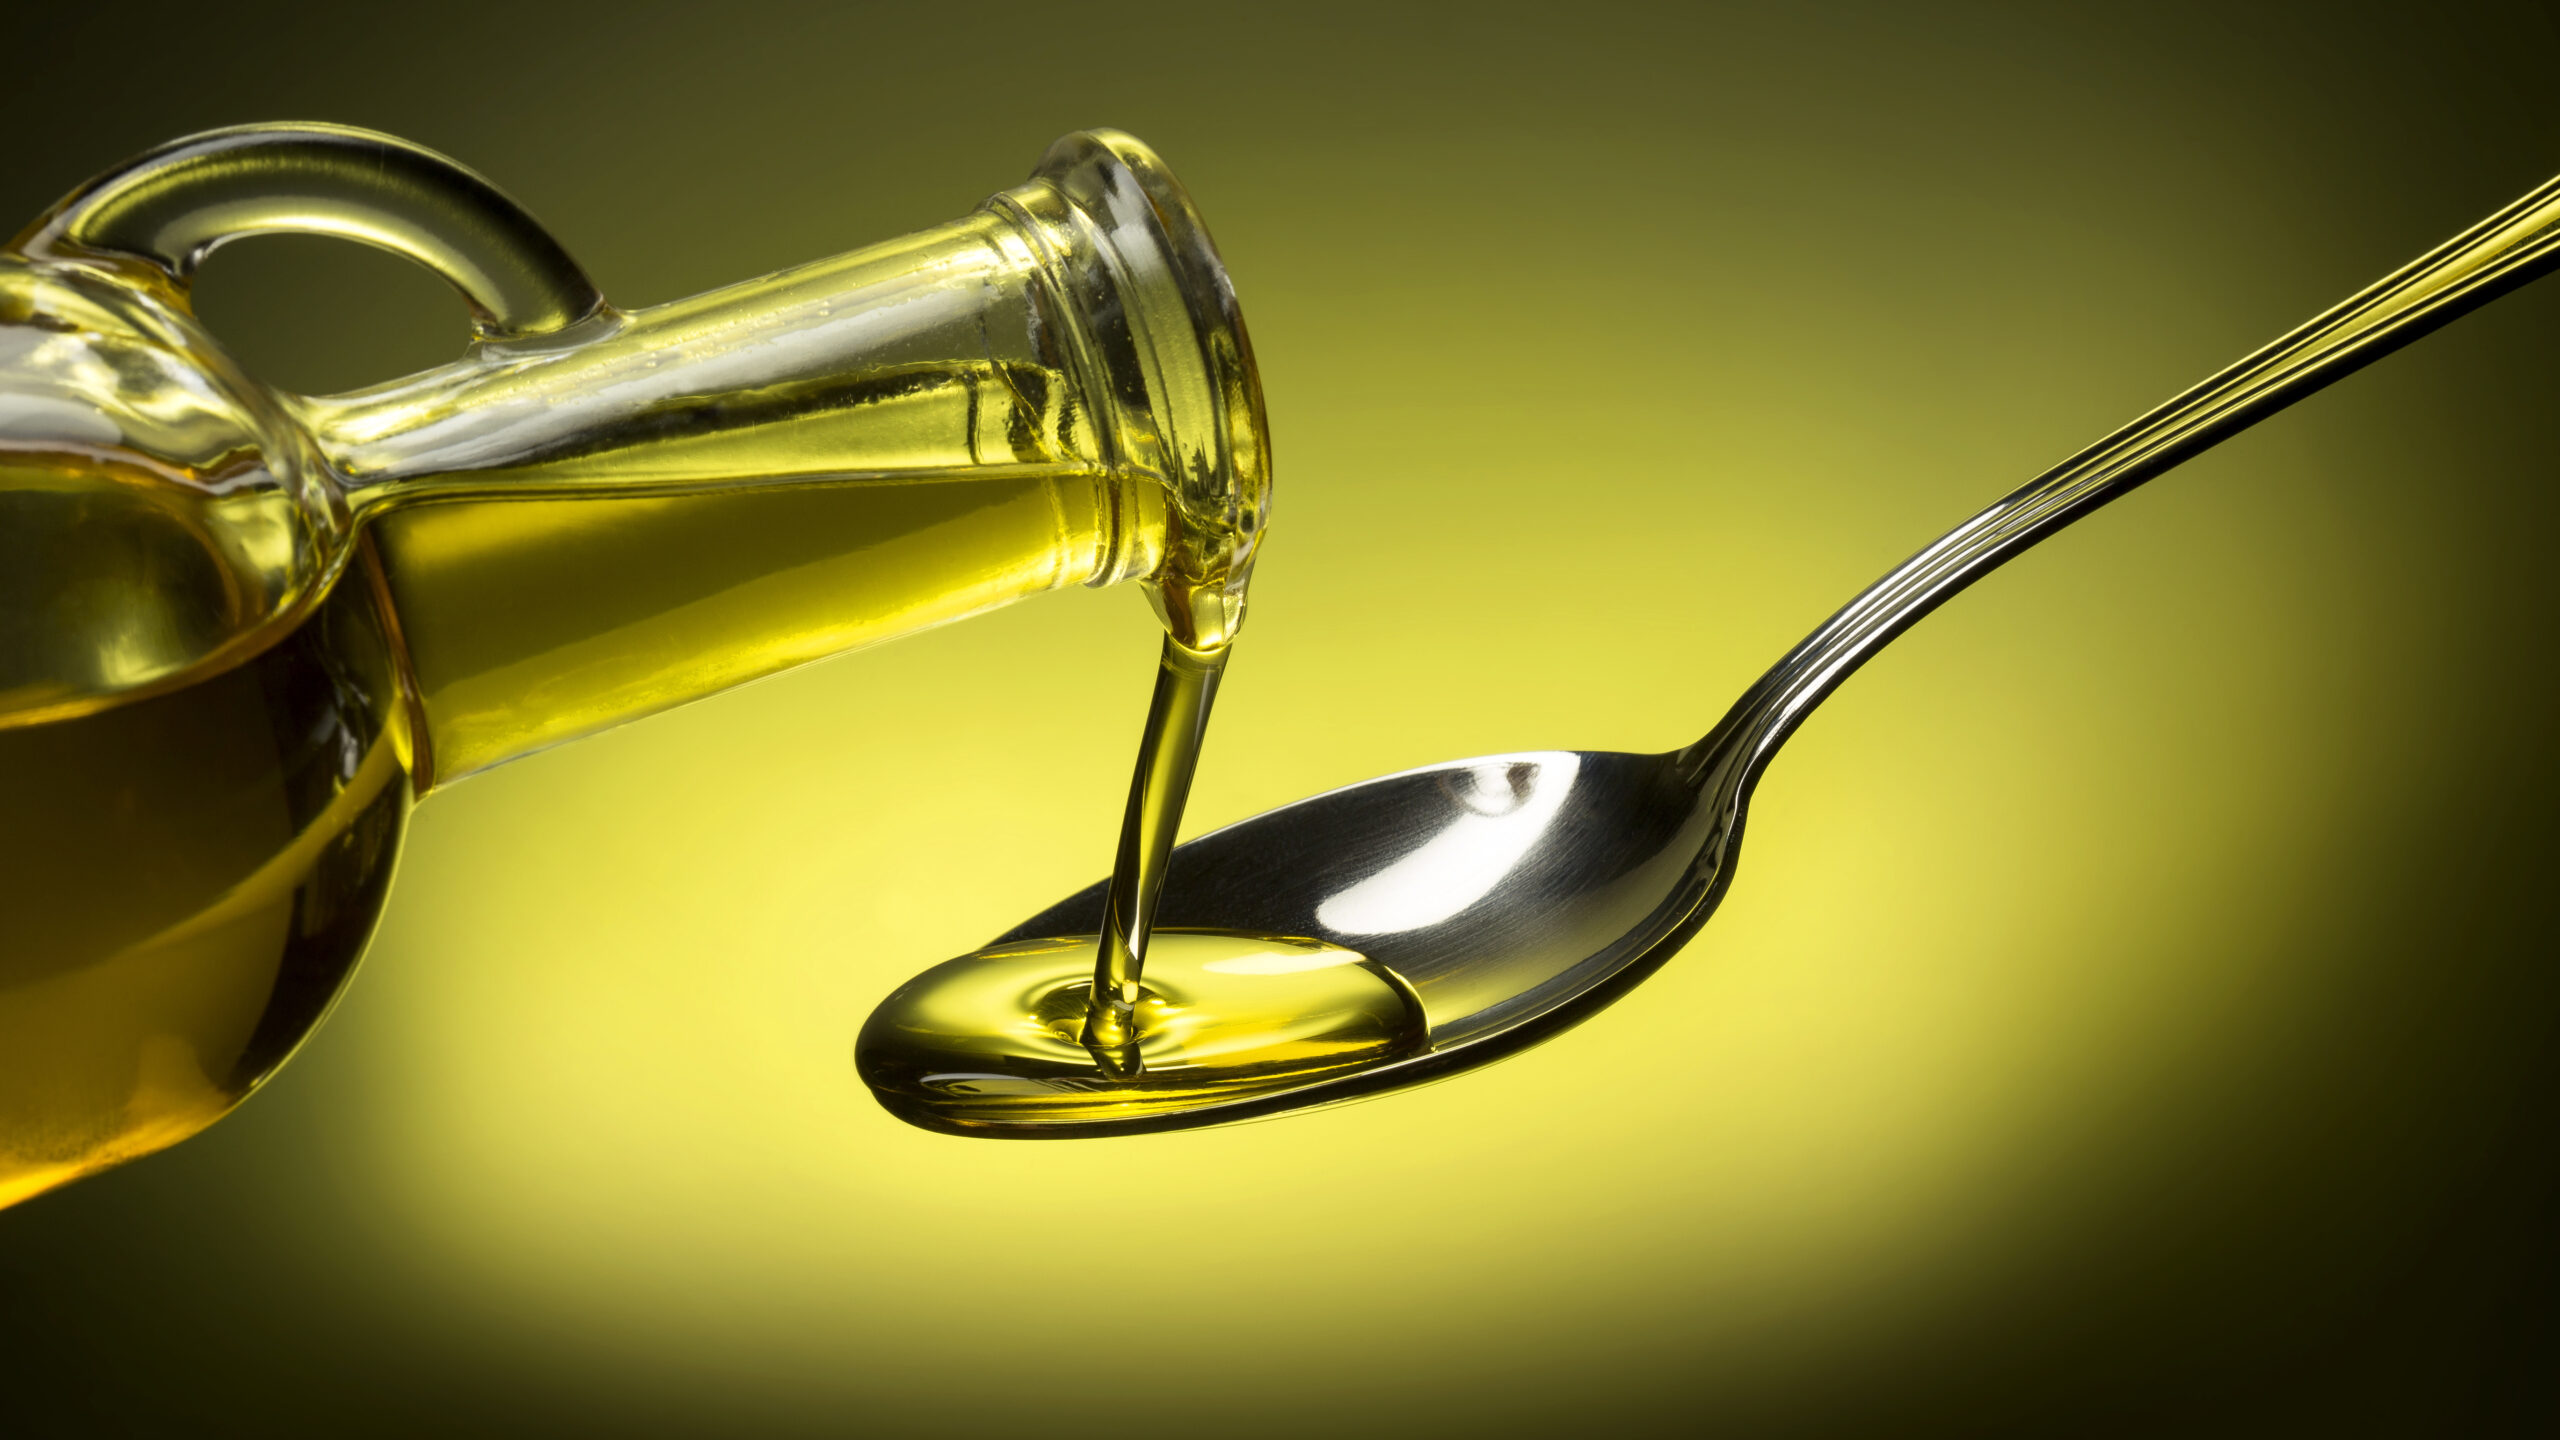 Bere un cucchiaio di olio di oliva la sera o al mattino fa bene alla salute